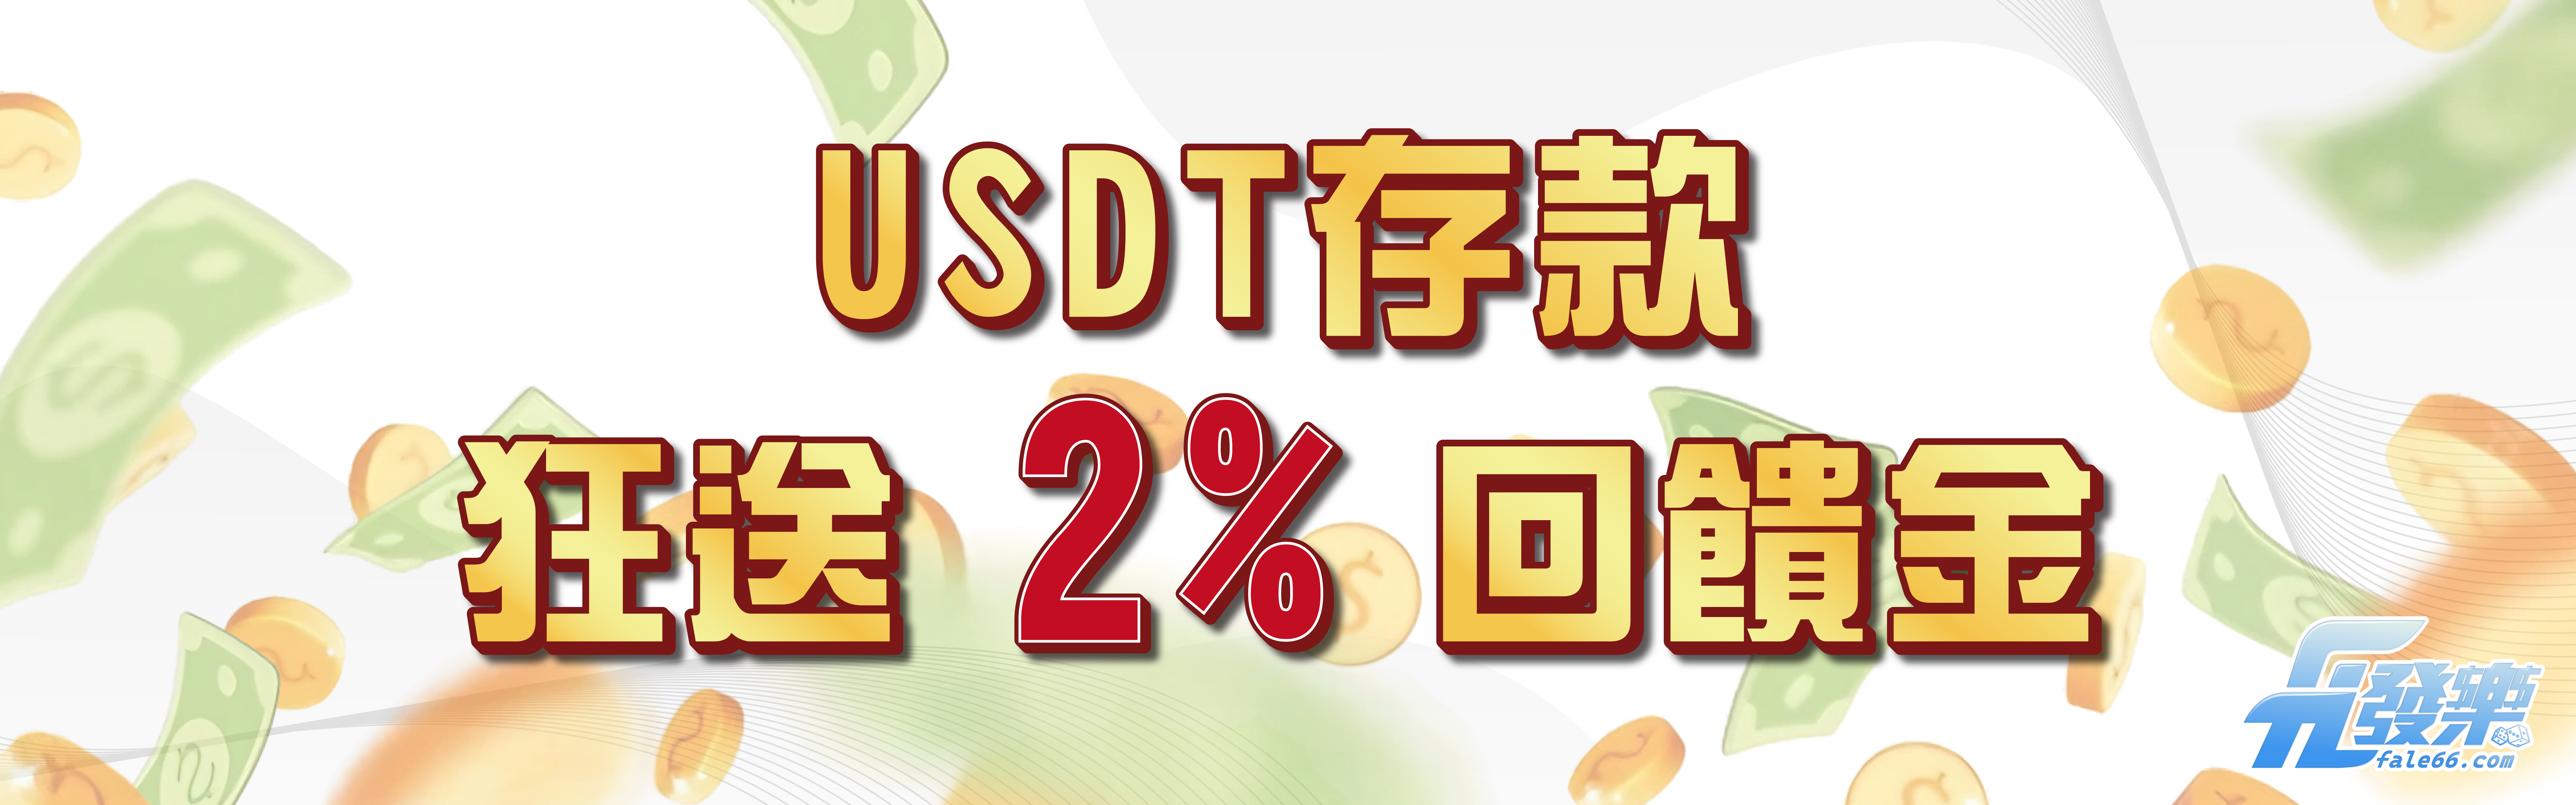 USDT虛擬貨幣儲值狂送2%回饋金 !!